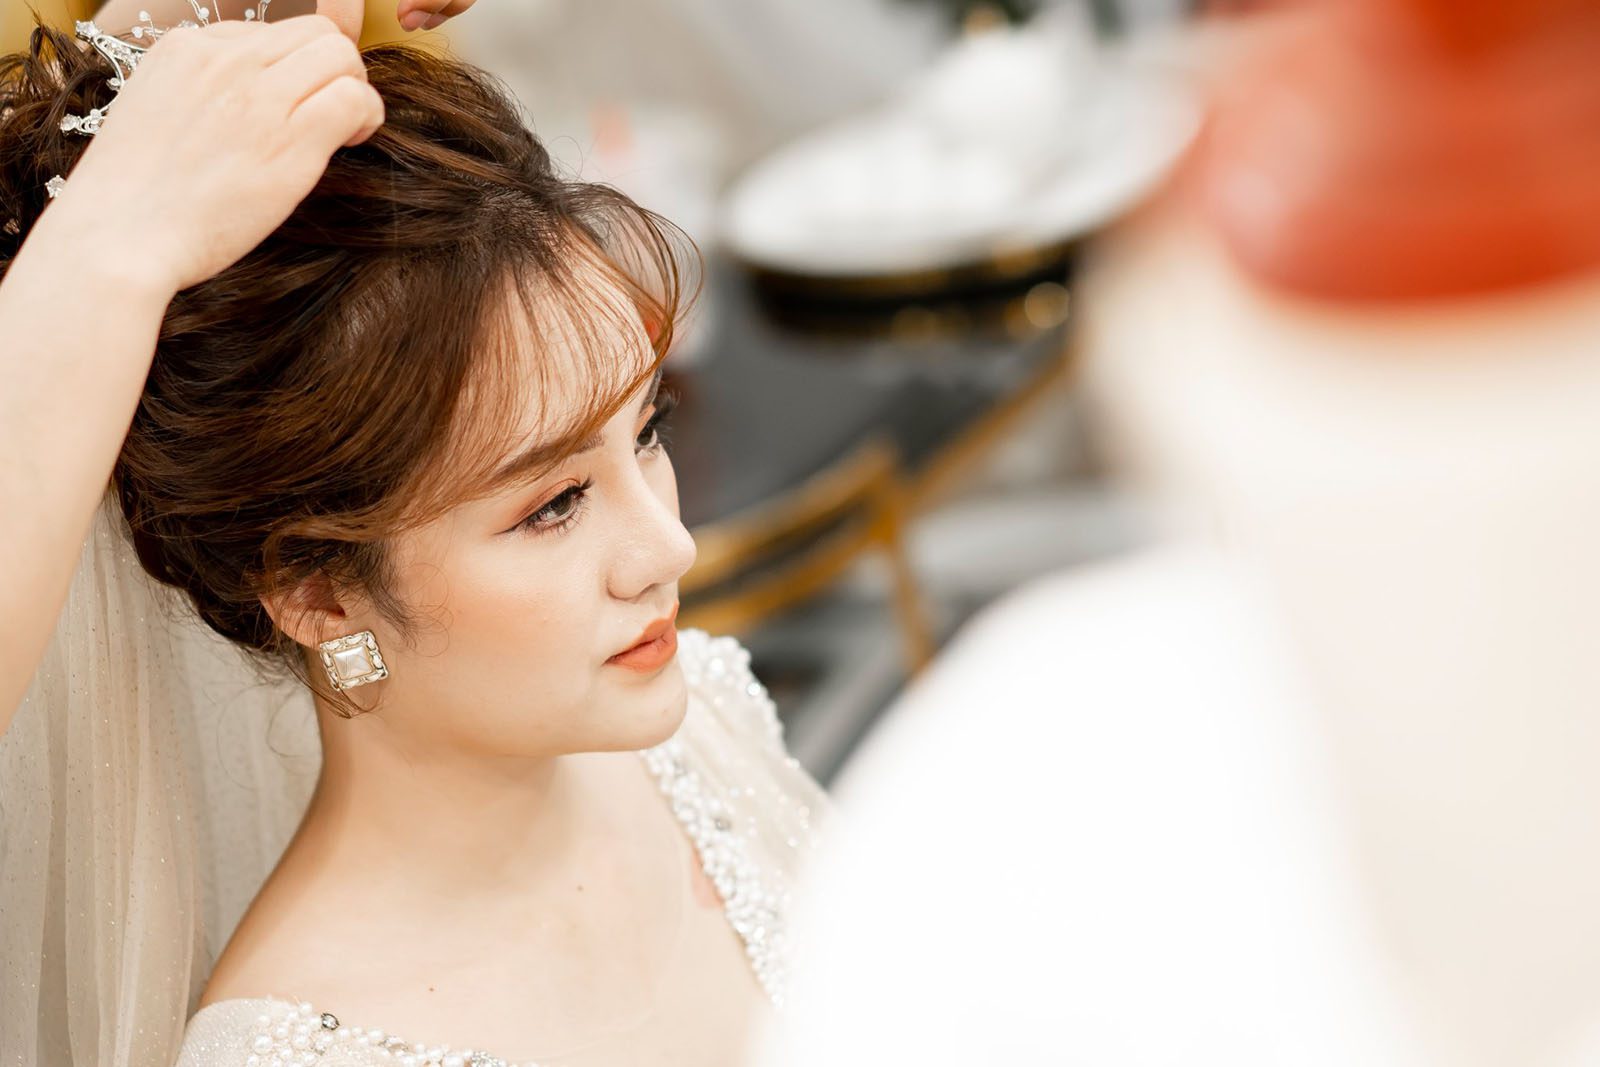 Tổng hợp các kiểu tóc phù hợp với từng gương mặt cô dâu trong ngày cưới